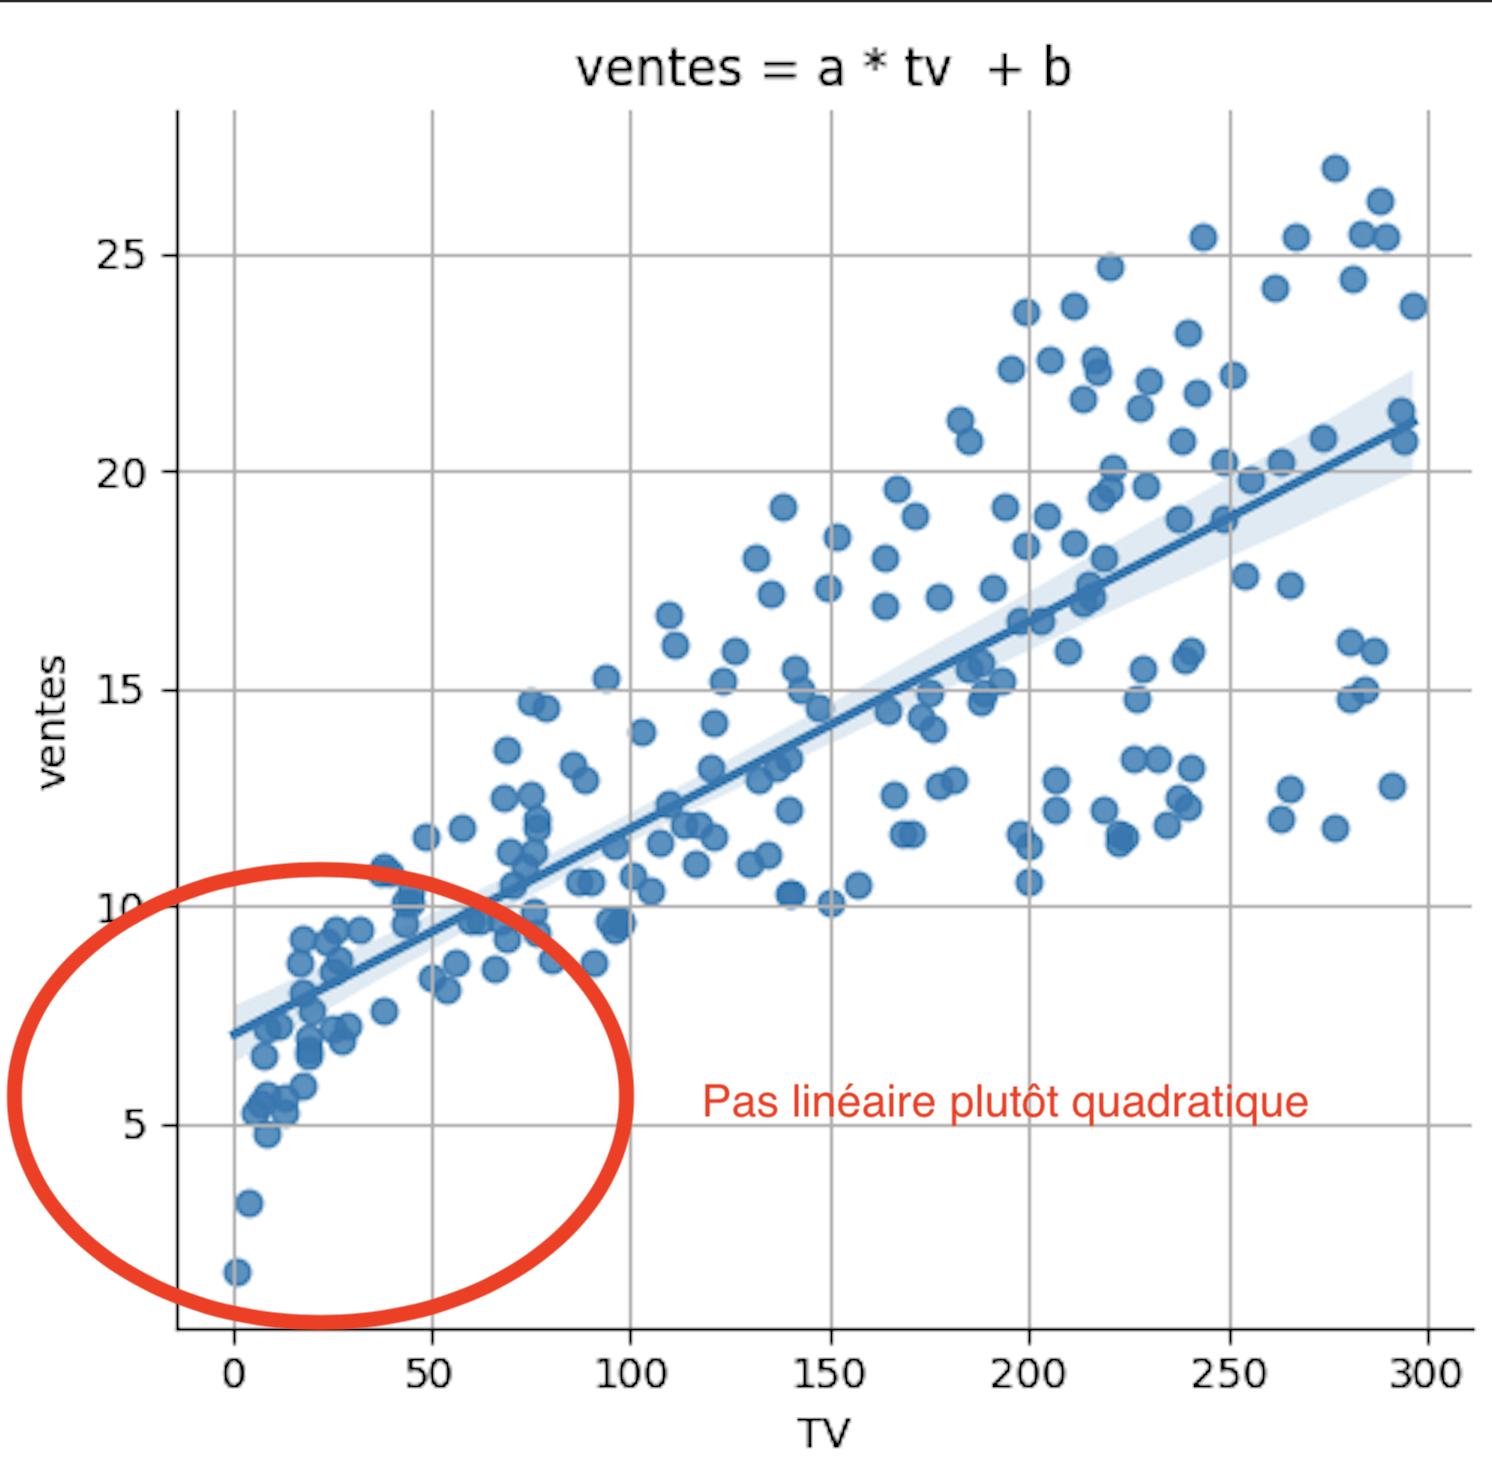 Nuage de points entre les variables ventes et tv, qui montre que la relation est plus quadratique que linéaire. On voit que le nuage forme davantage une courbe qu'une ligne droite.